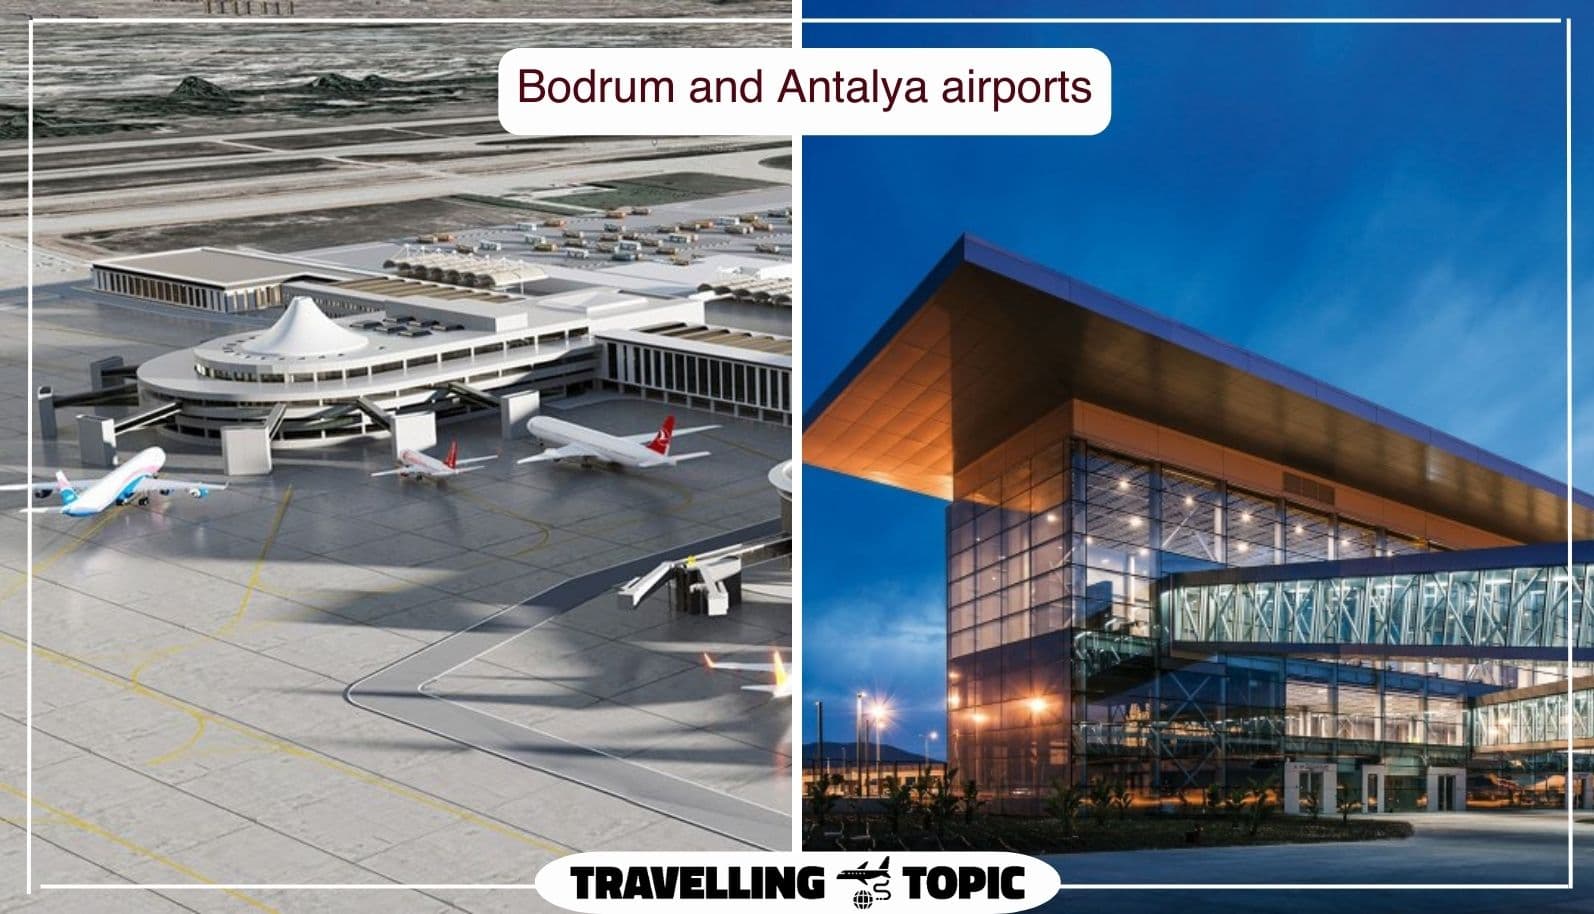 Bodrum and Antalya airports